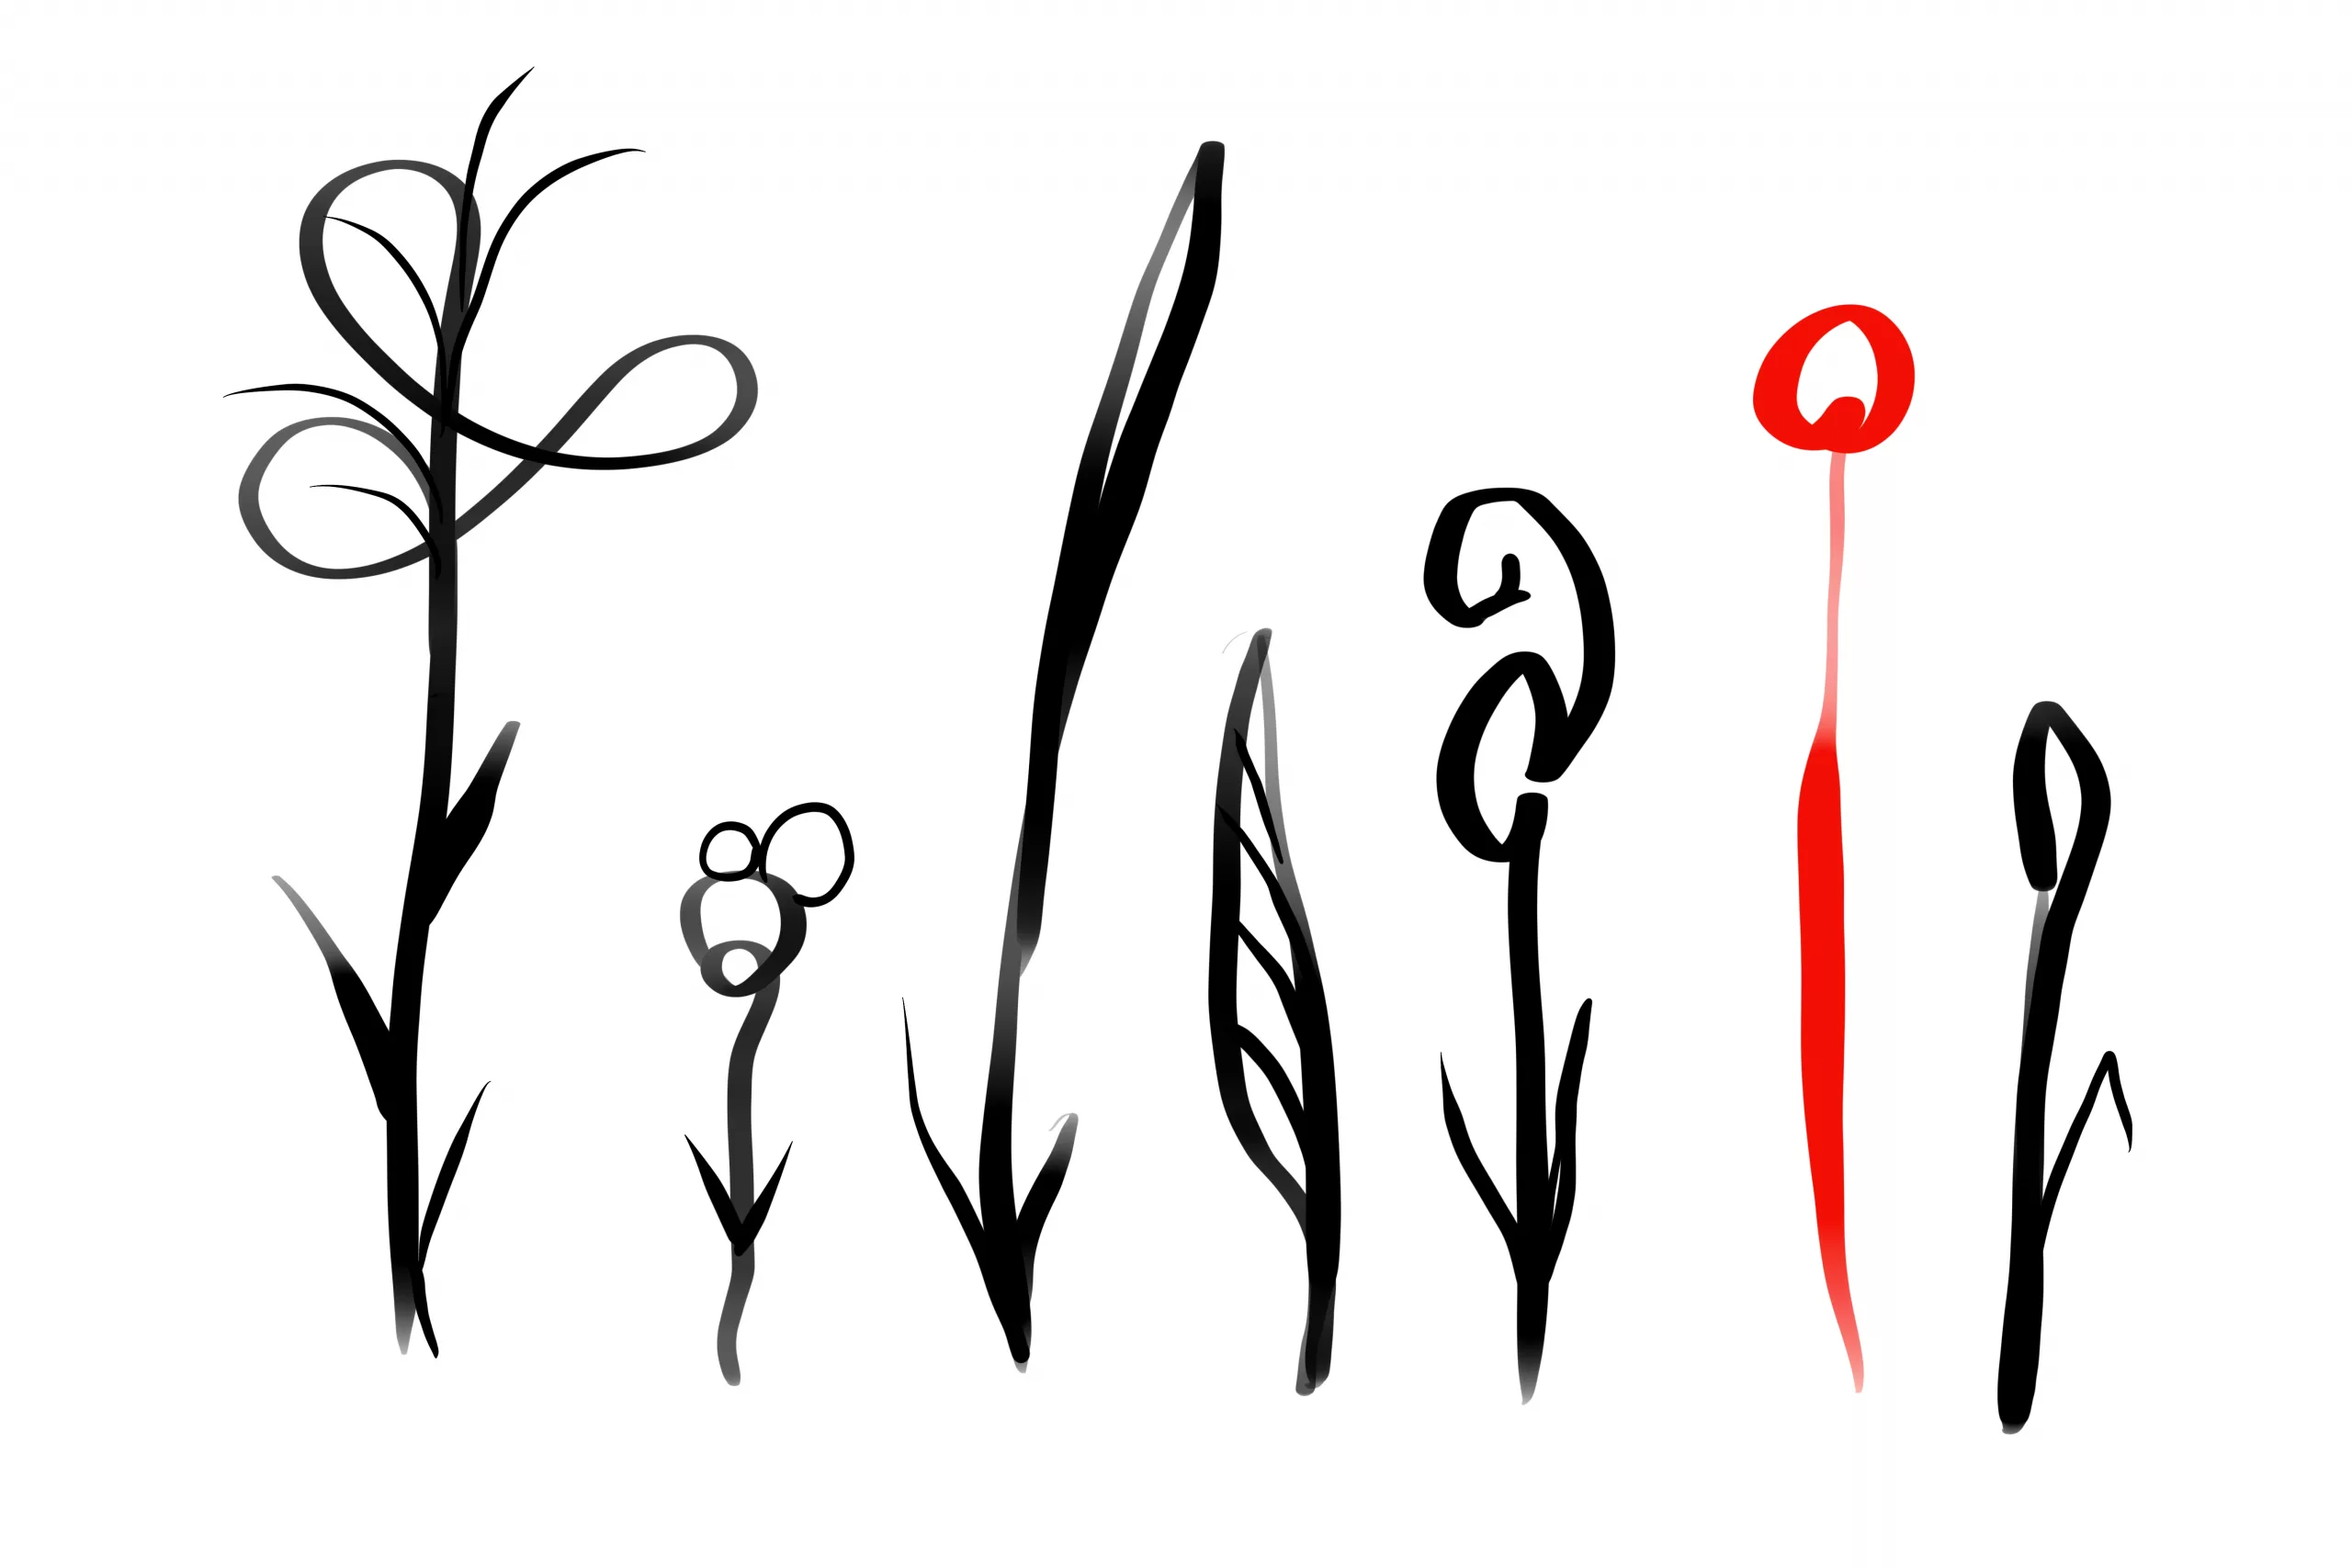 Grenzlinien: Digital gezeichnete Grafik, 7 stilisierte Pflanzen nebeneinander, sechs schwarz, die vorletzte rot.